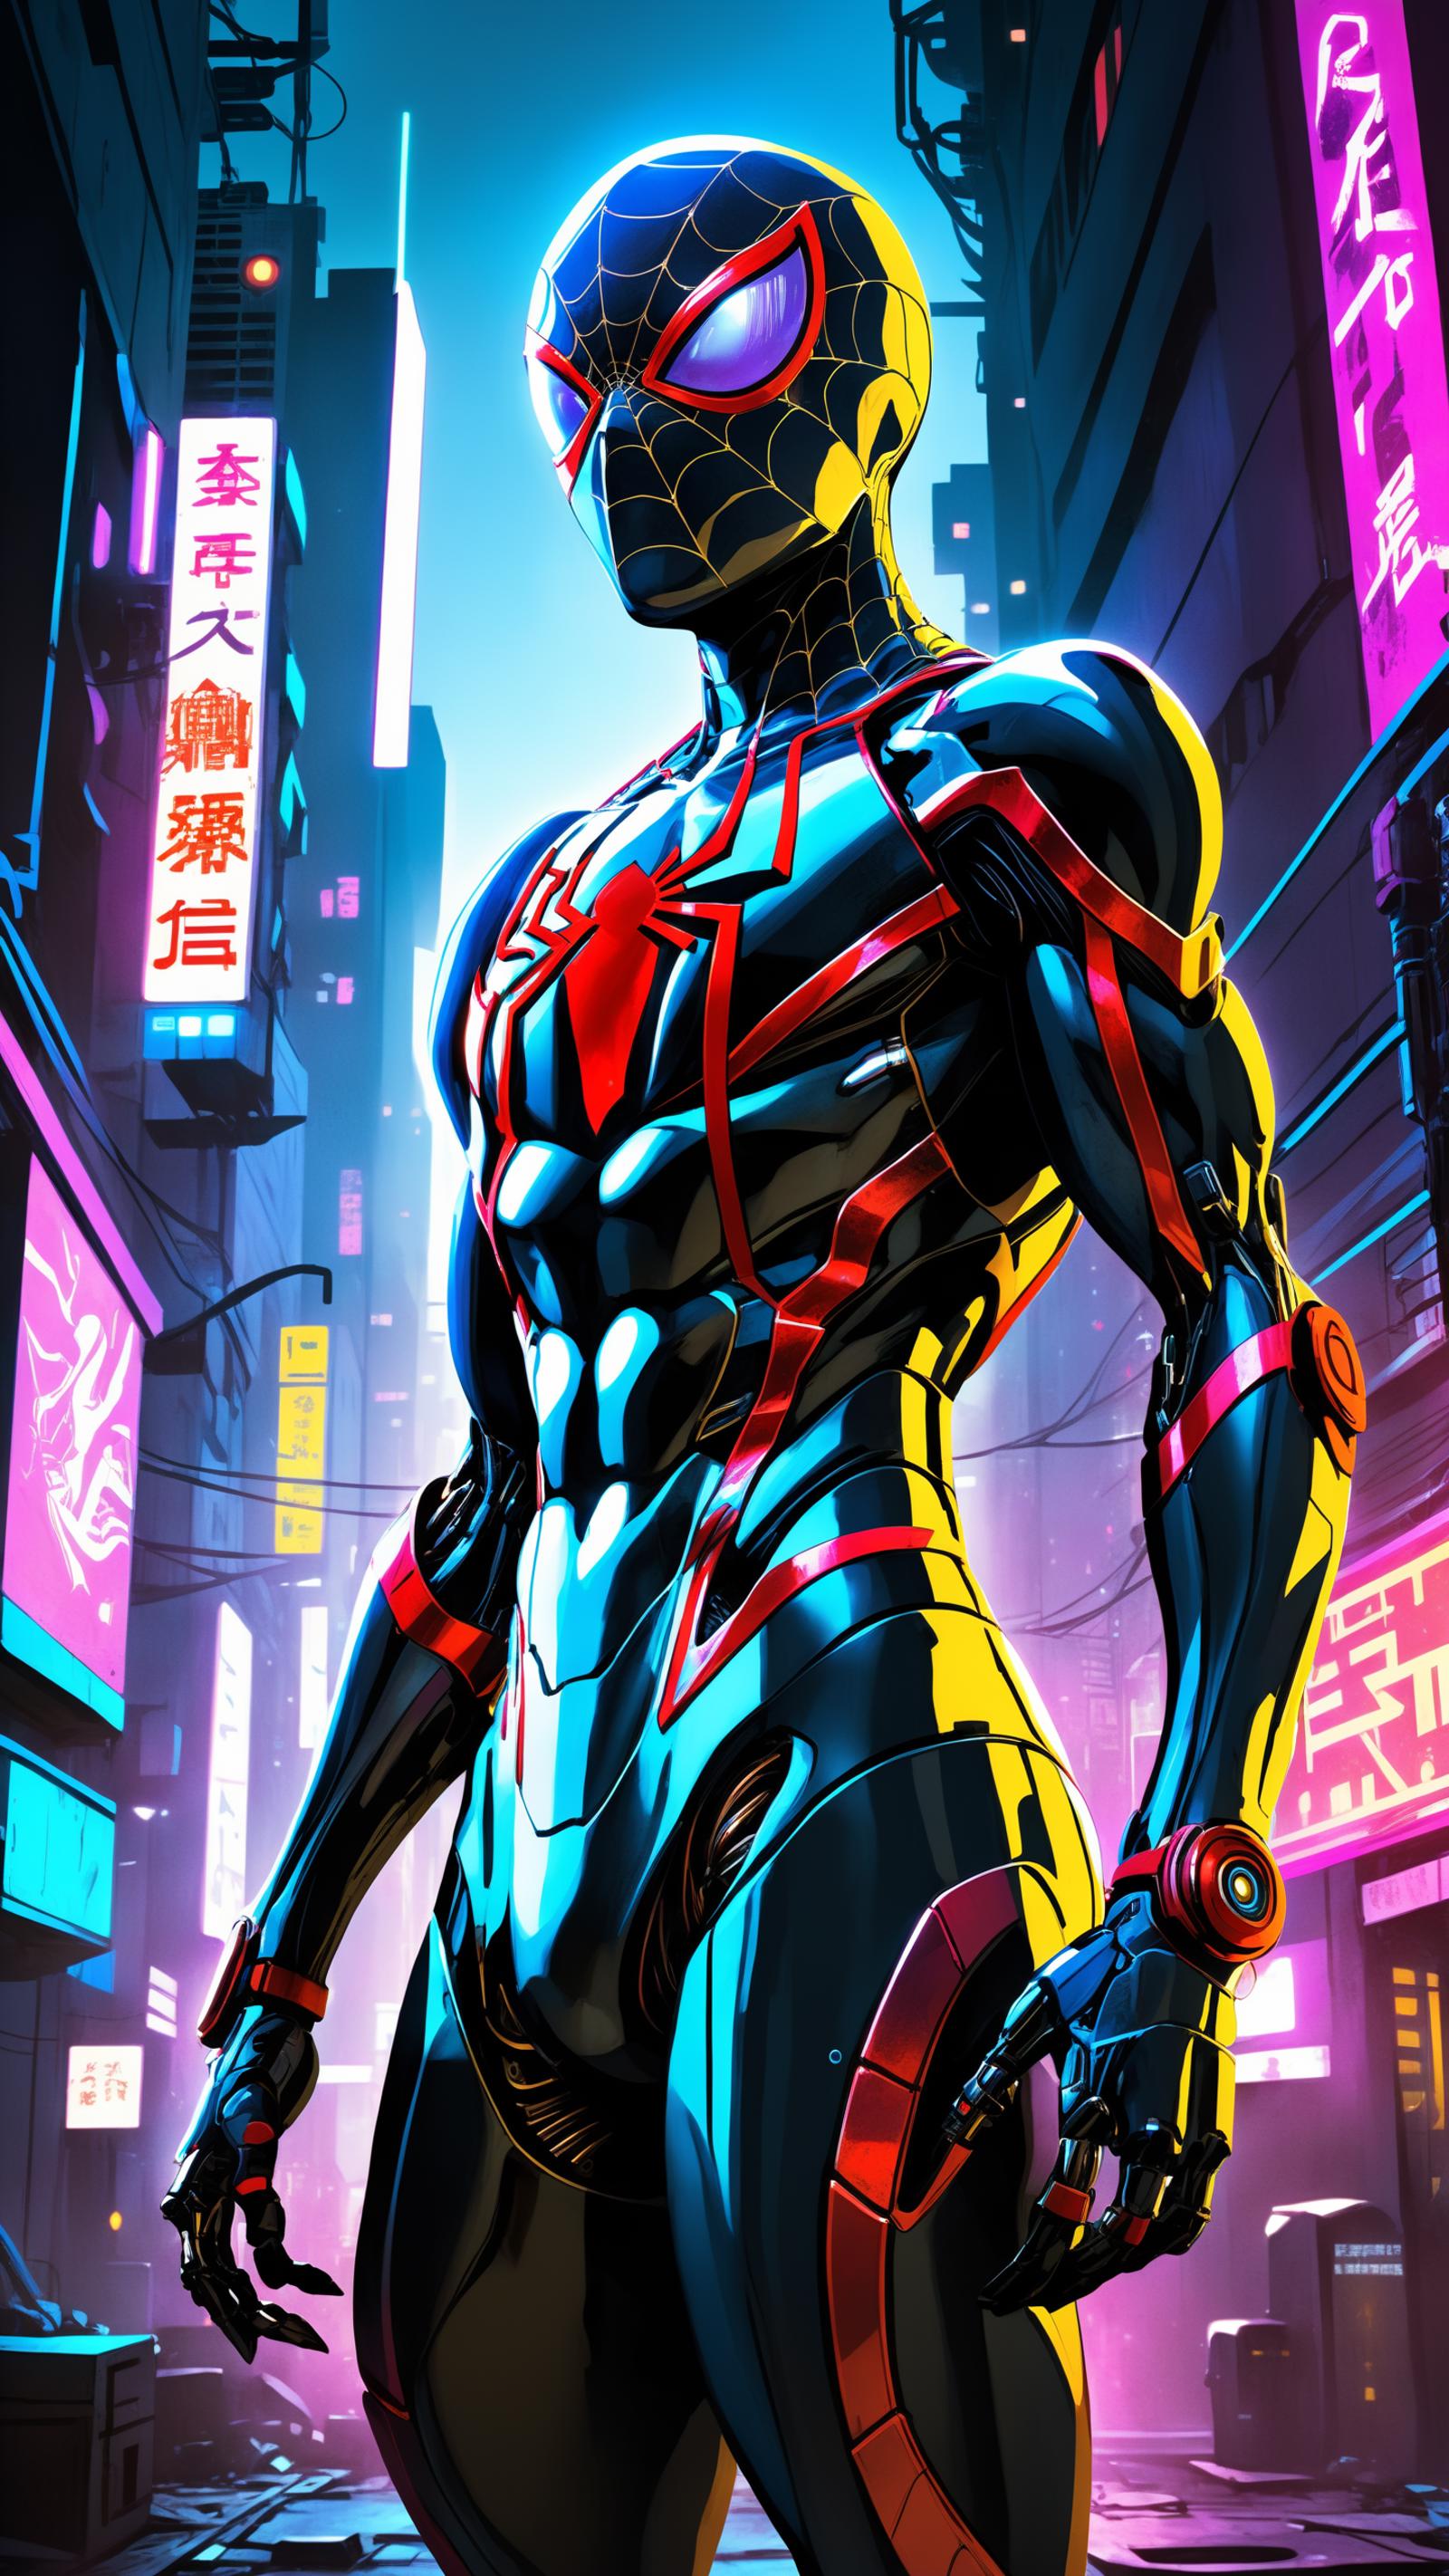 The Amazing Spider-Man in a futuristic cityscape.